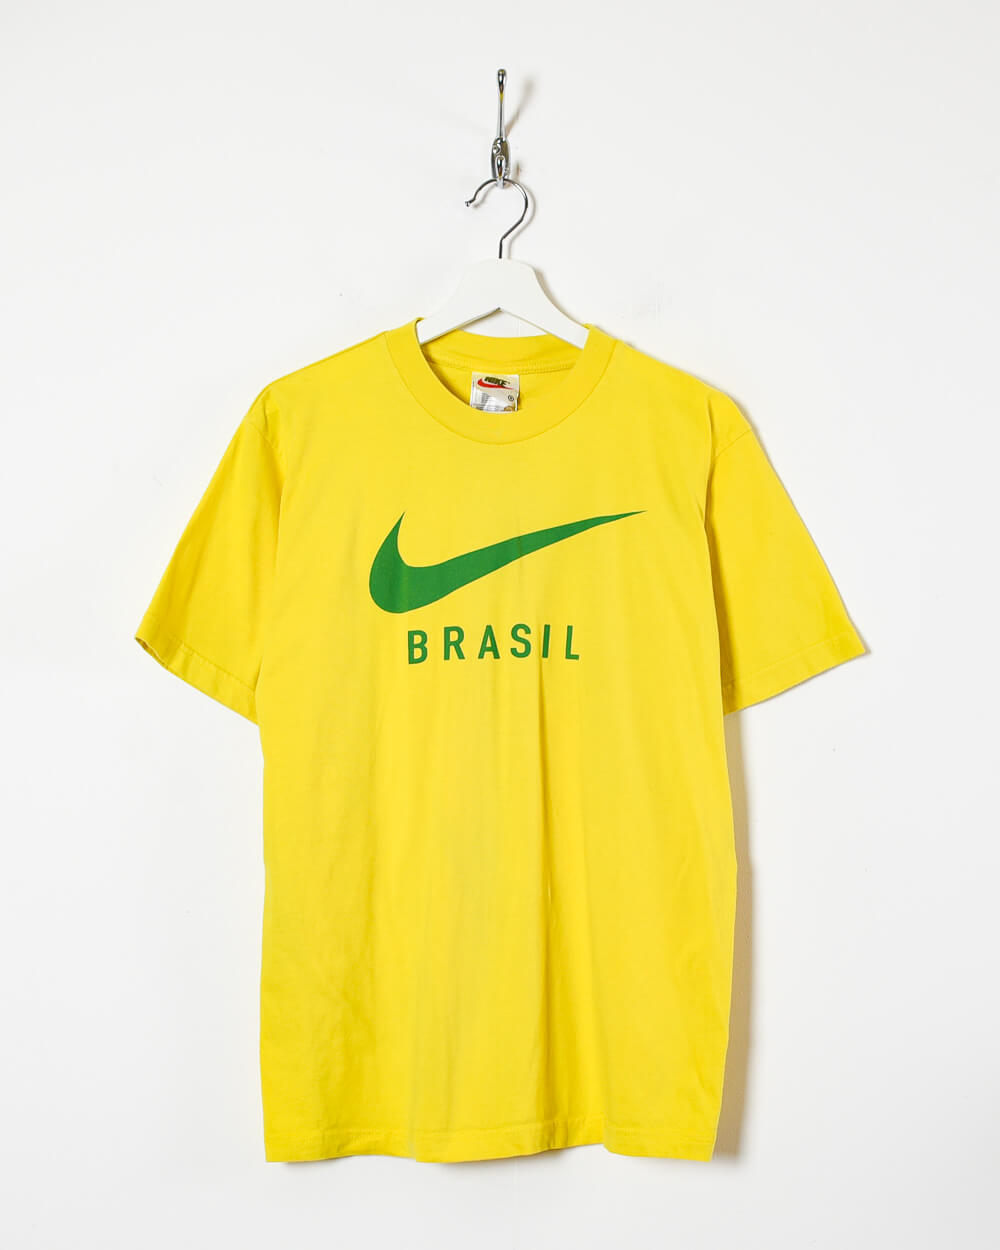 Yellow Nike 90s Brazil T-Shirt - Small